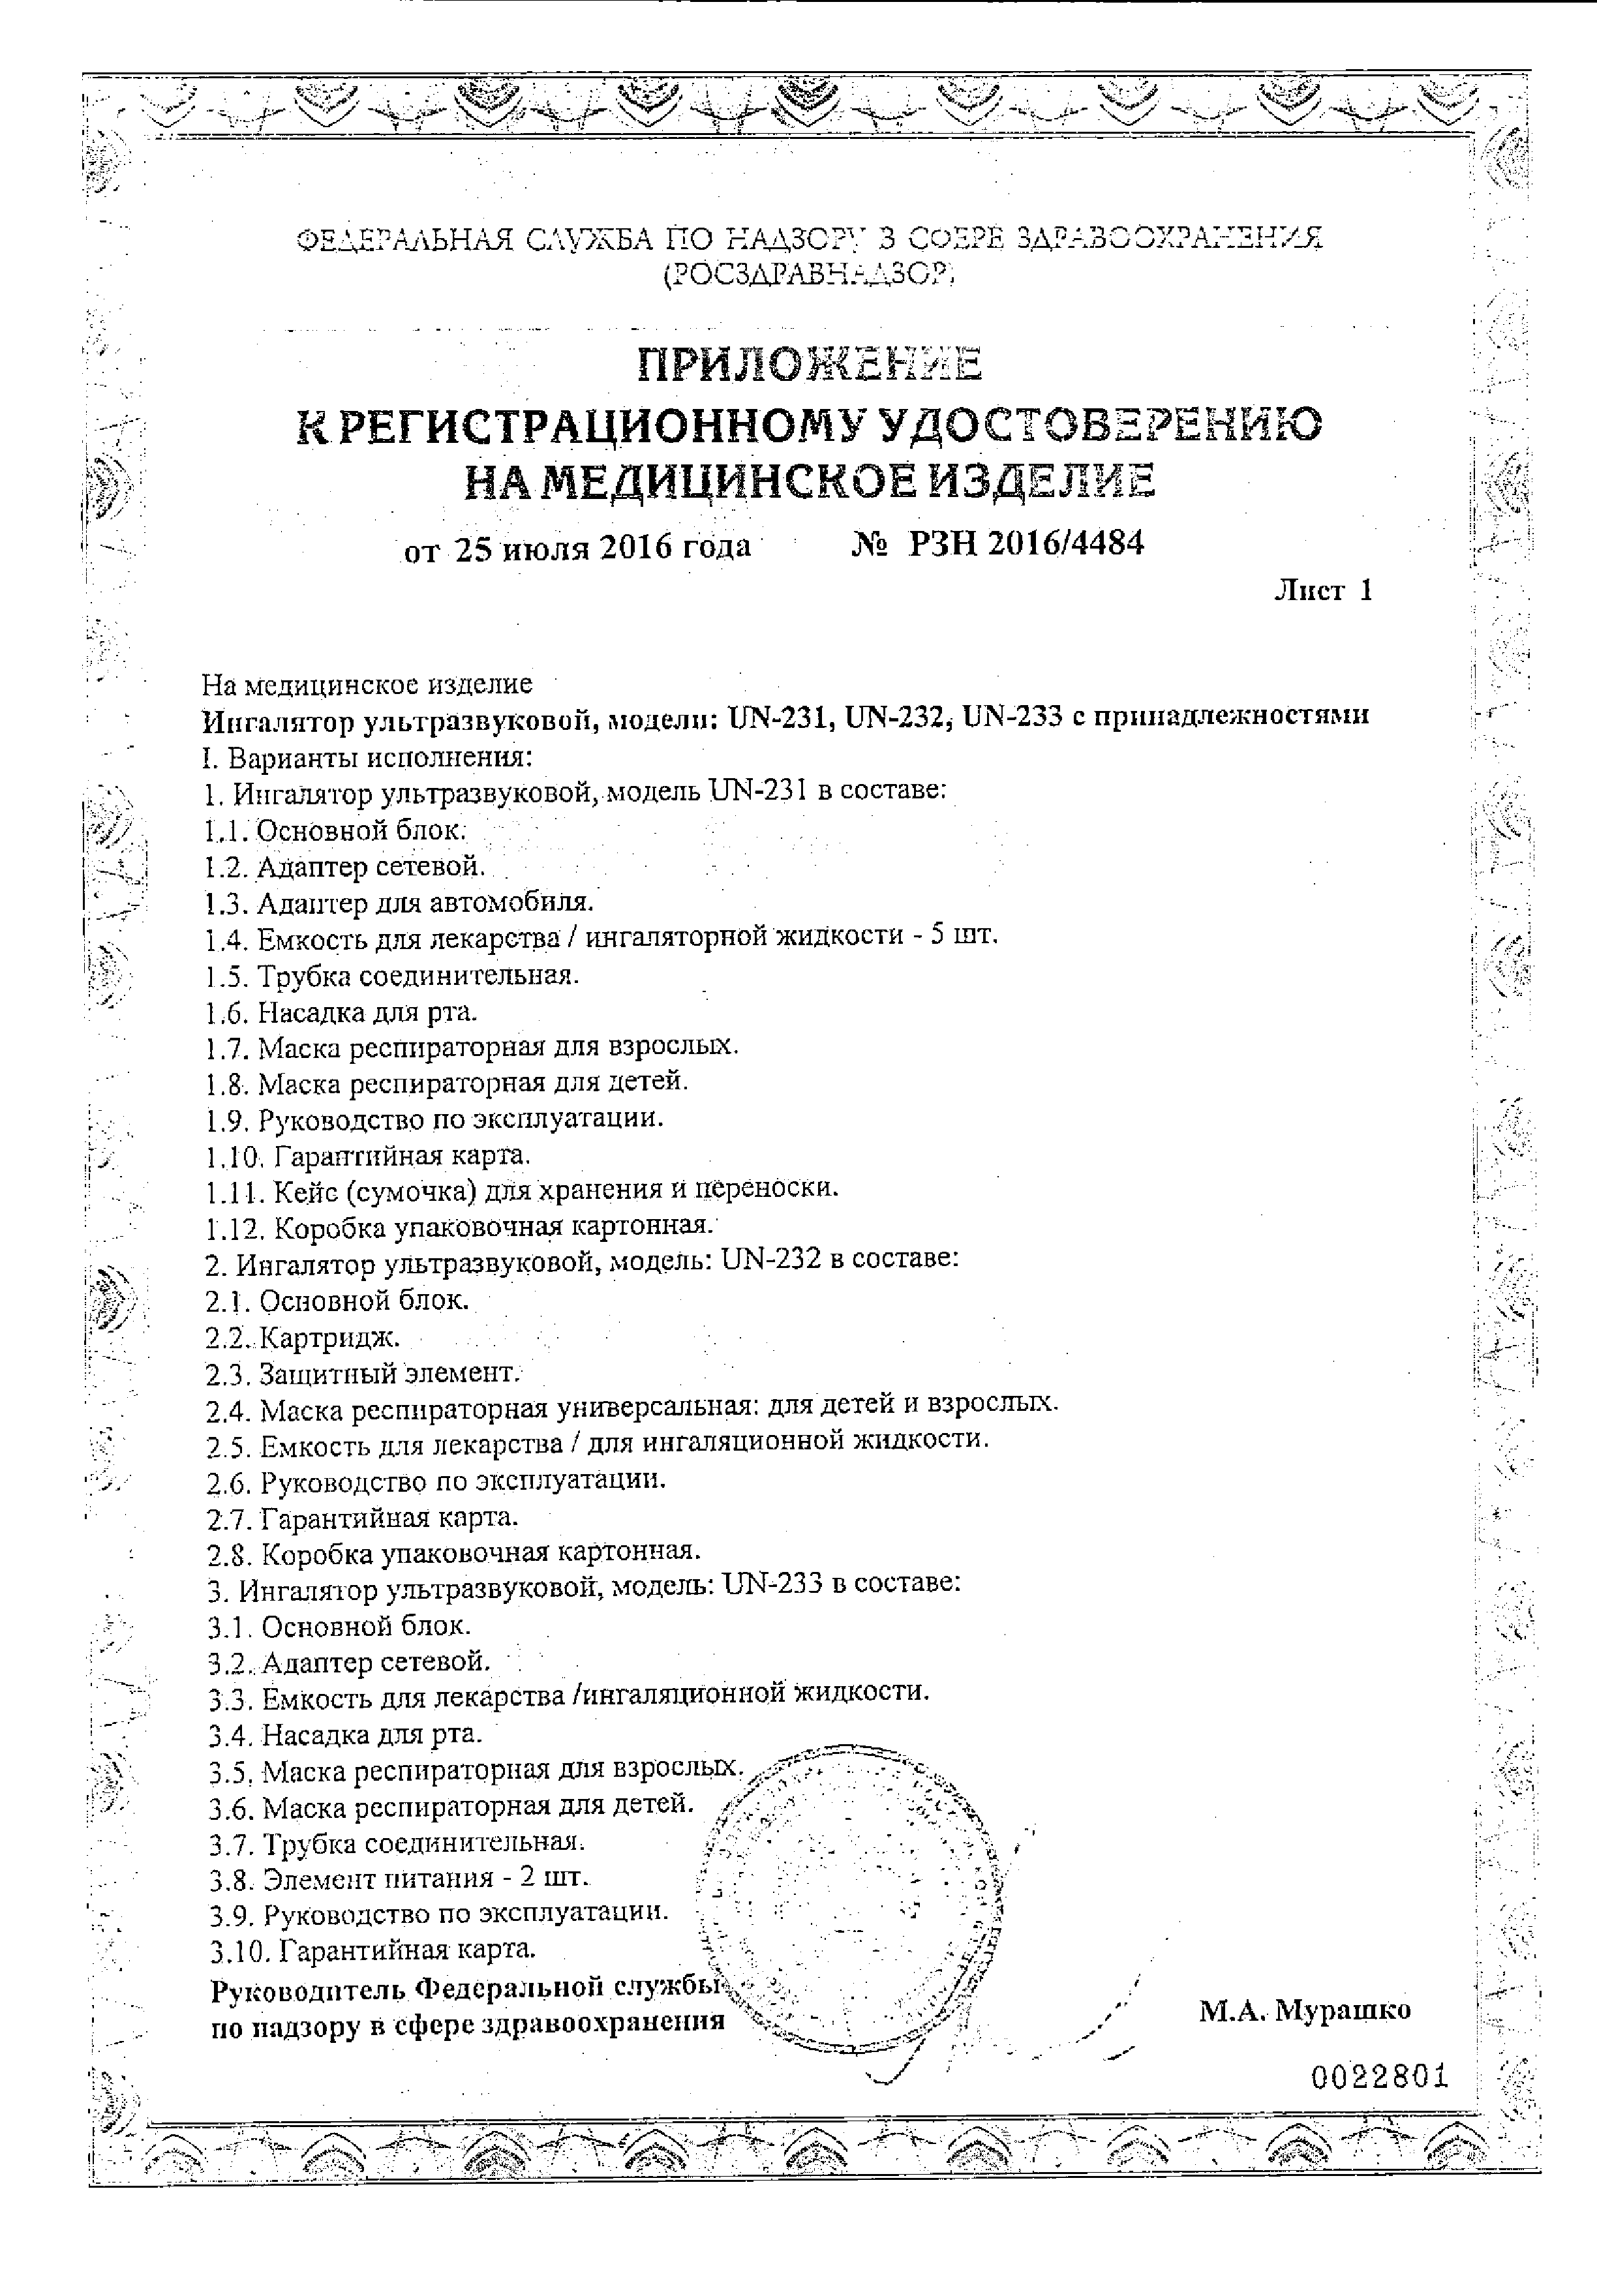 Ингалятор ультразвуковой AND UN-231 сертификат